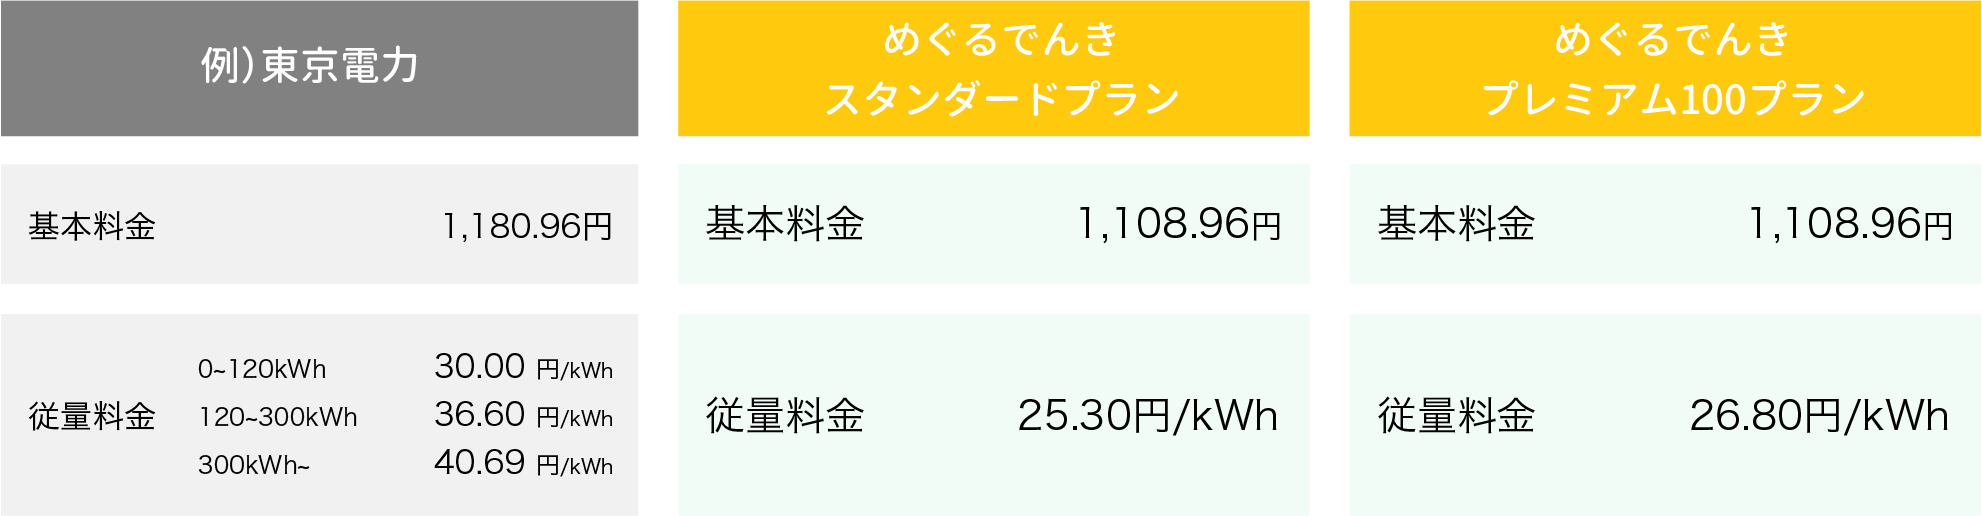 東京電力とめぐるでんきスタンダードプラン/プレミアム100プランとの料金比較